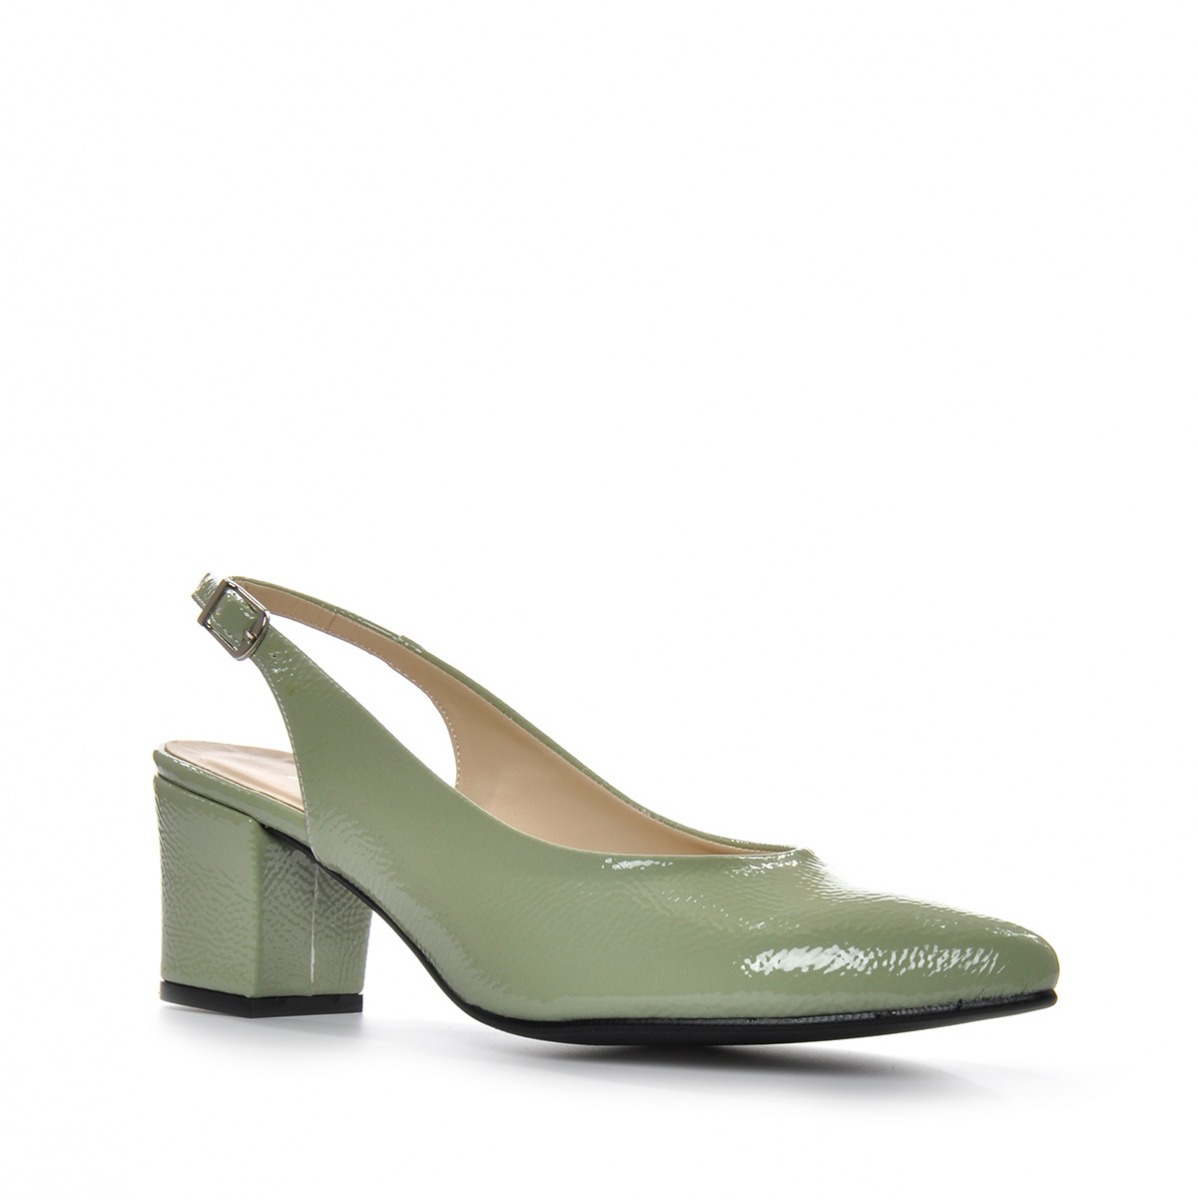 Flo Kadın  Yeşil Klasik Topuklu Ayakkabı VZN-233Y. 3